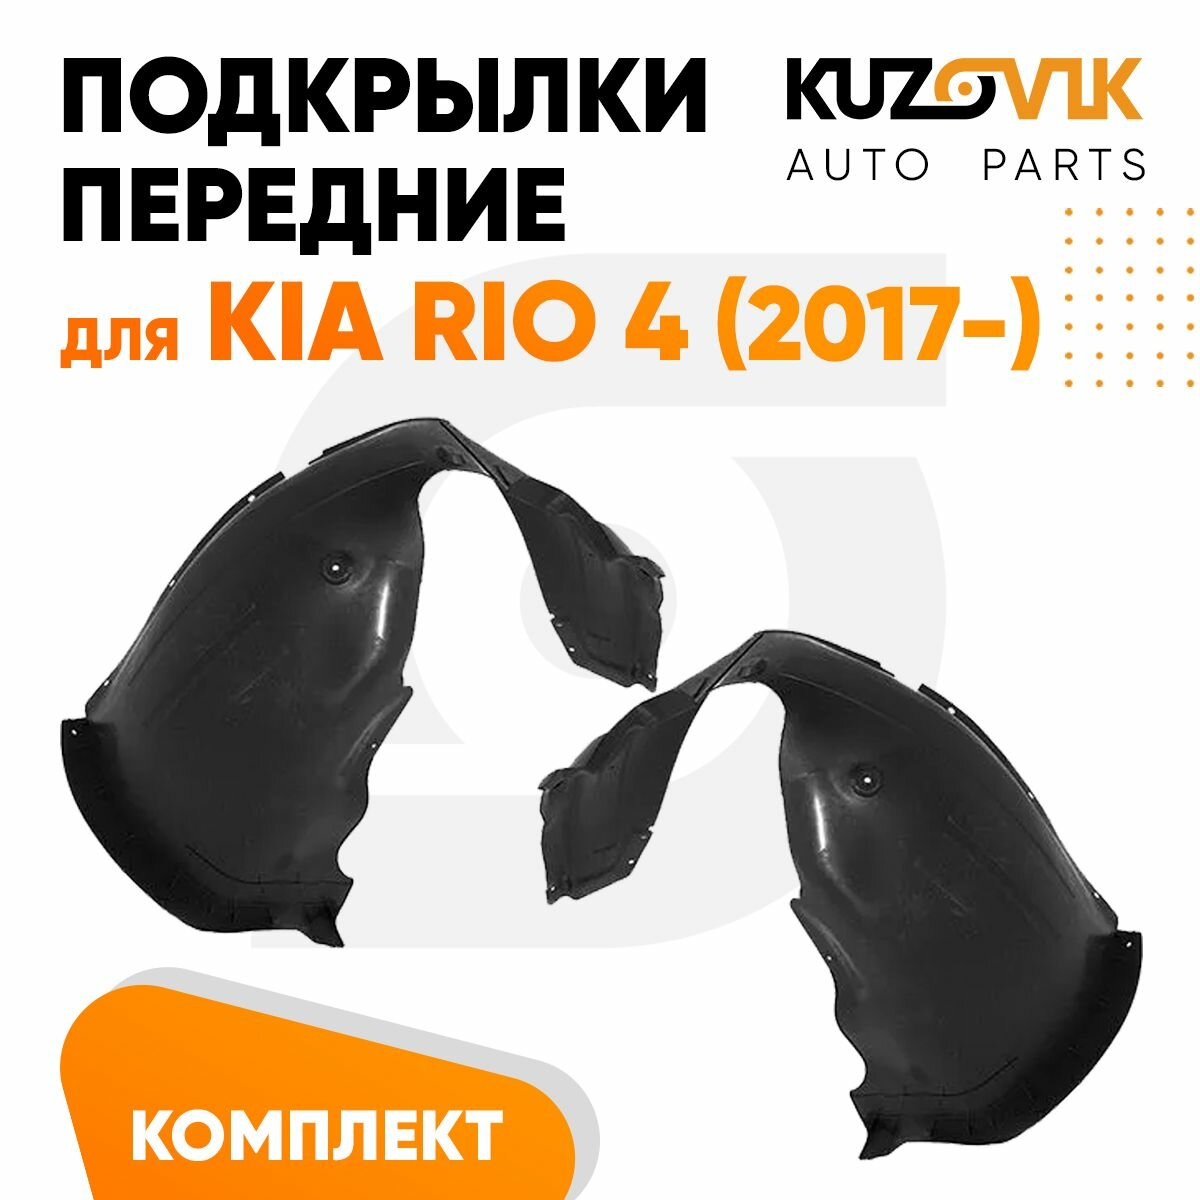 Подкрылки передние для Киа Рио Kia Rio 4 (2017-) комплект левый + правый 2 штуки, локер, защита крыла